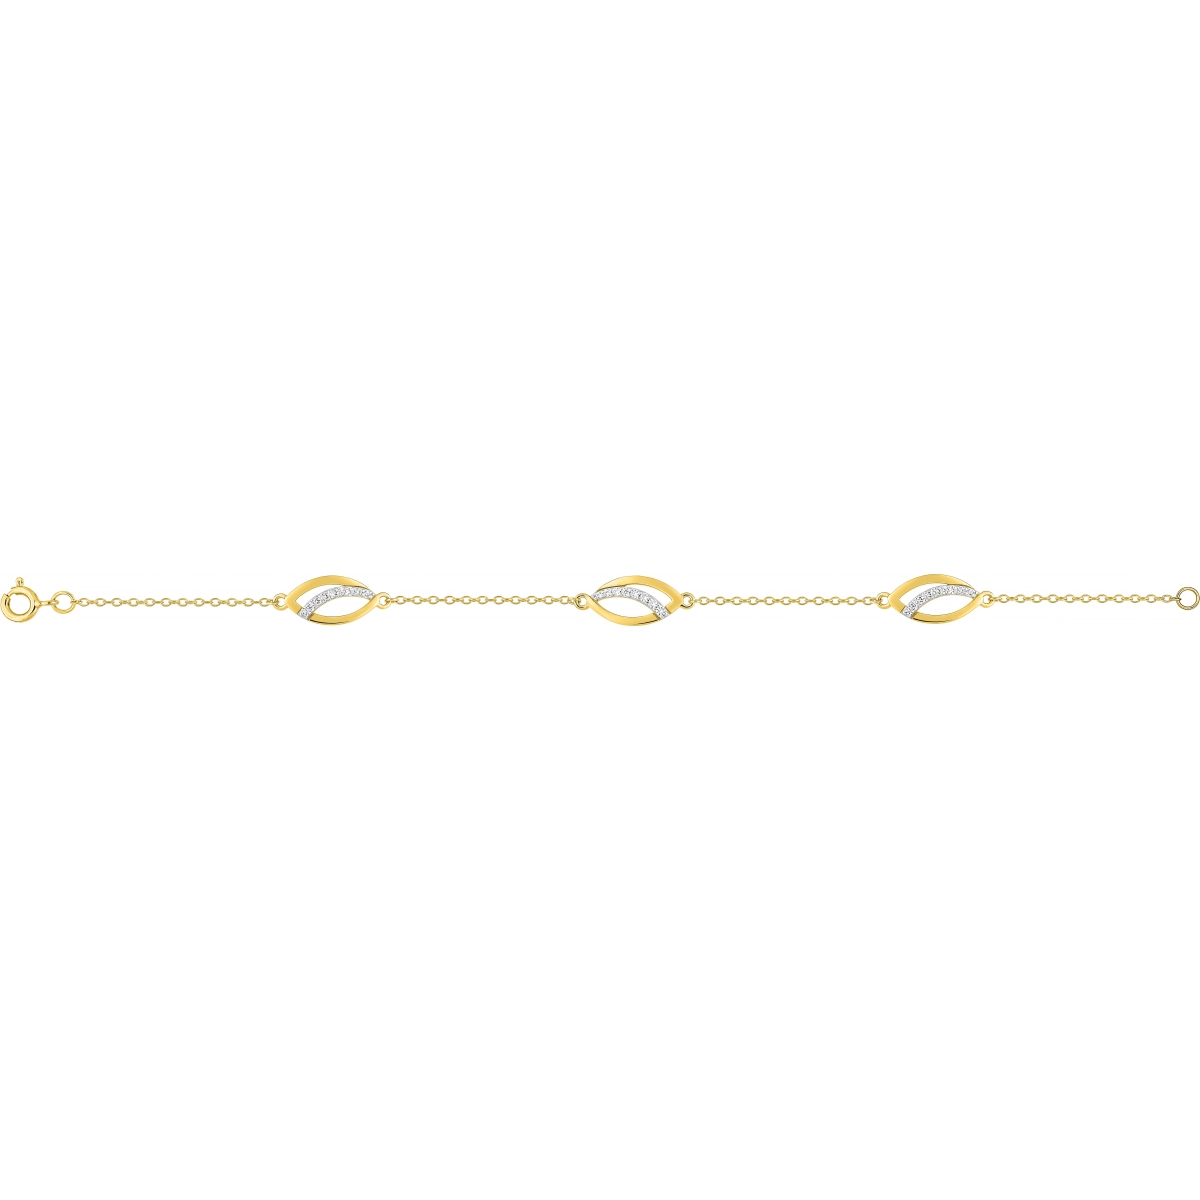 Bracelet 18cm w. cz gold plated Brass 2TG  Lua Blanca  BSBK32Z18.0